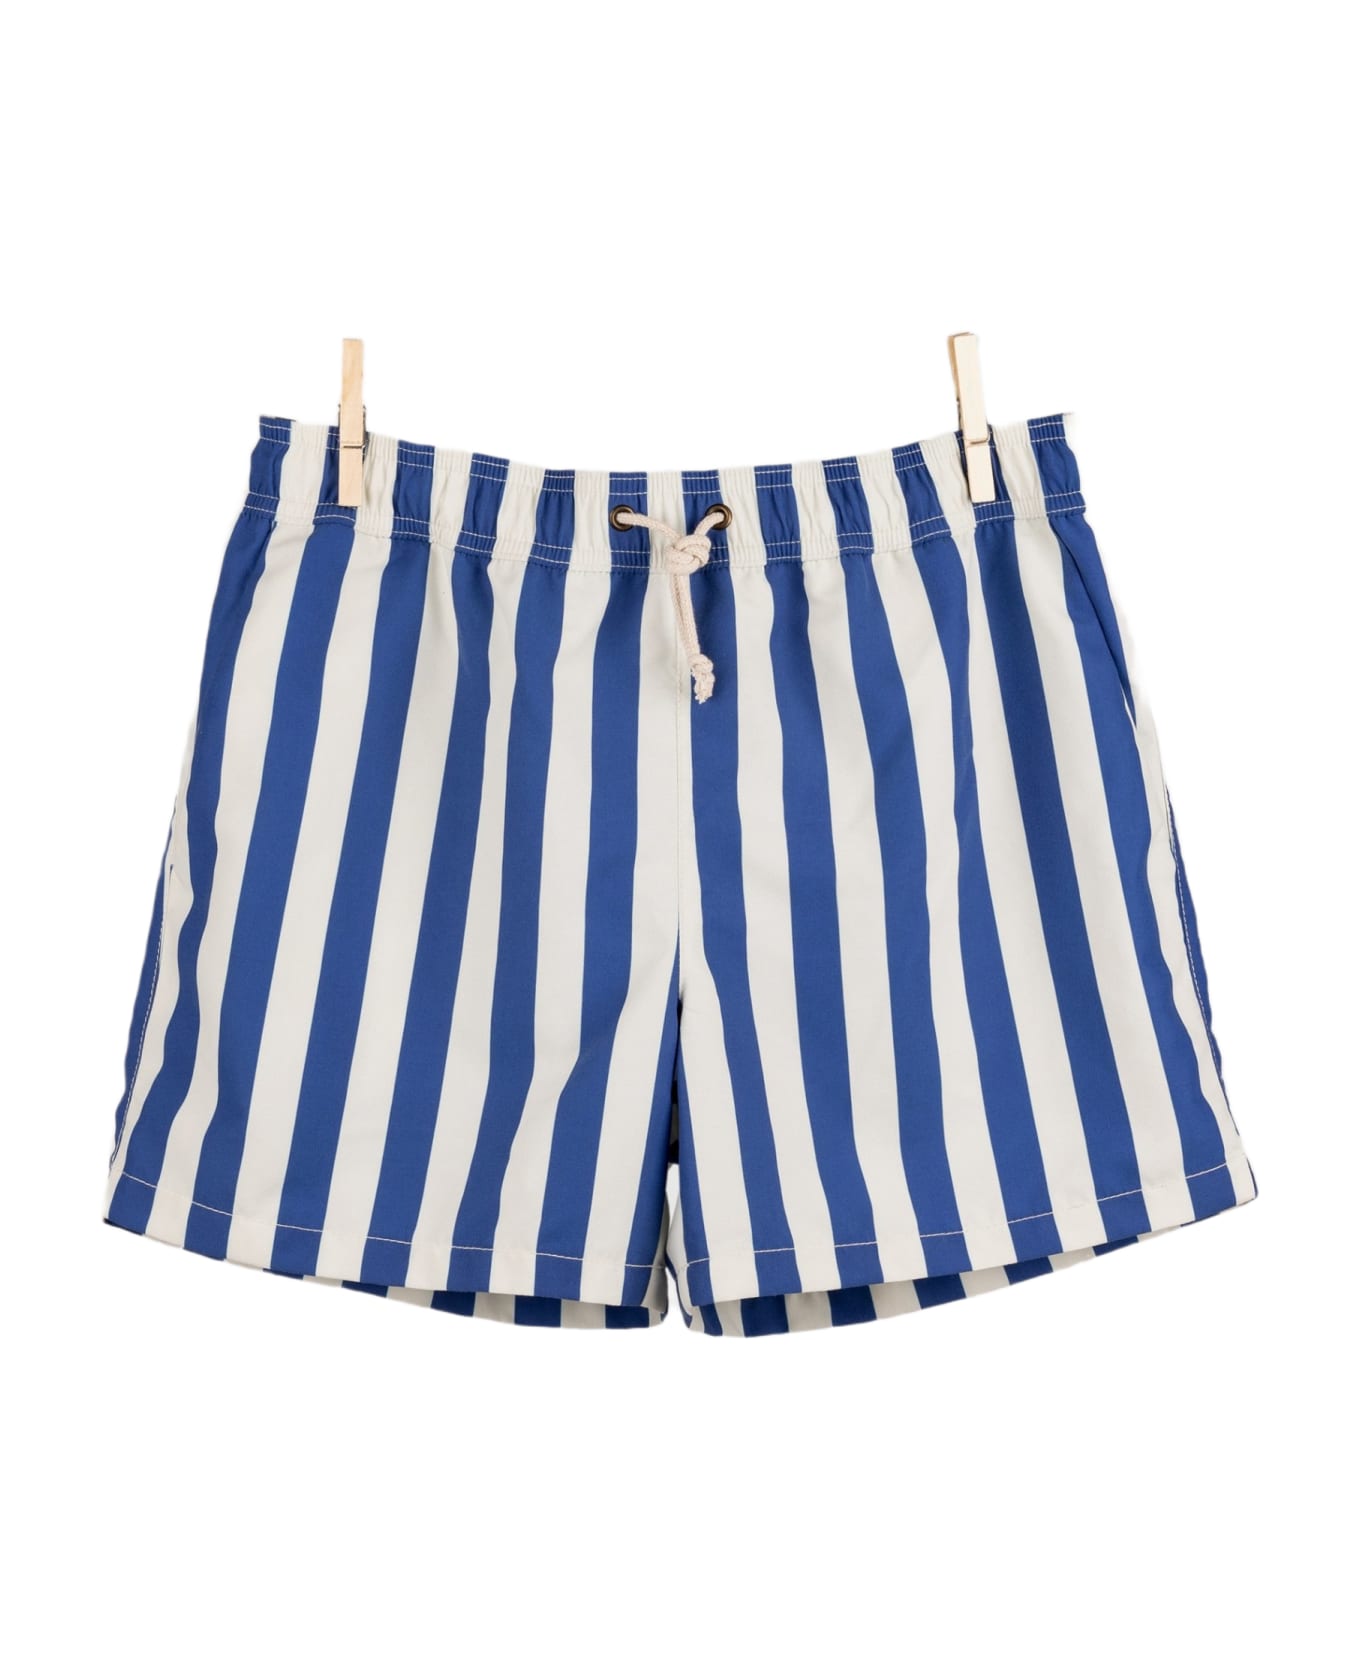 Ripa Ripa Paraggi Blu Swim Shorts - Blue